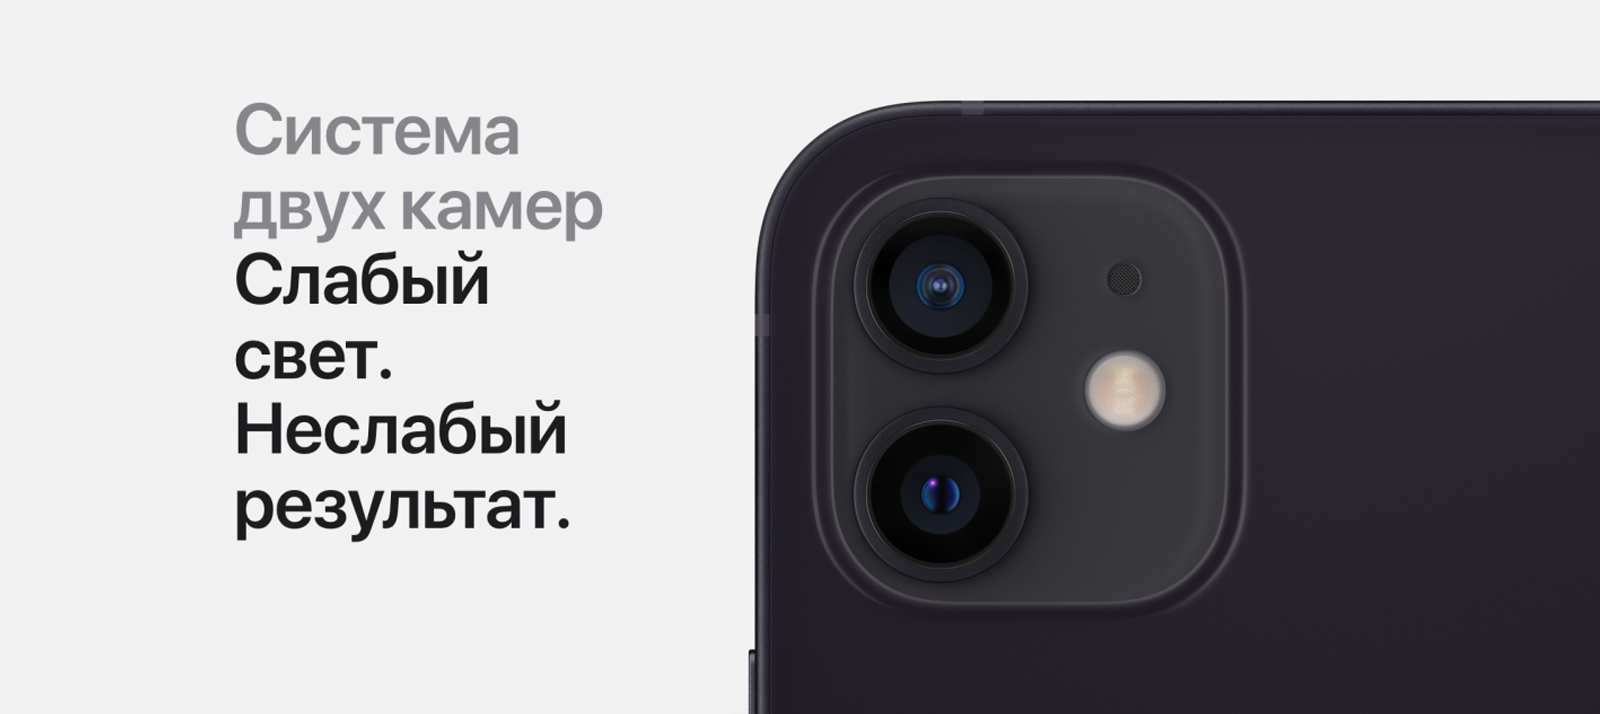 Смартфон Apple iPhone 12 Mini 64GB Белый купить в Уфе по цене 54 490 руб. в  магазине VIPMARKET